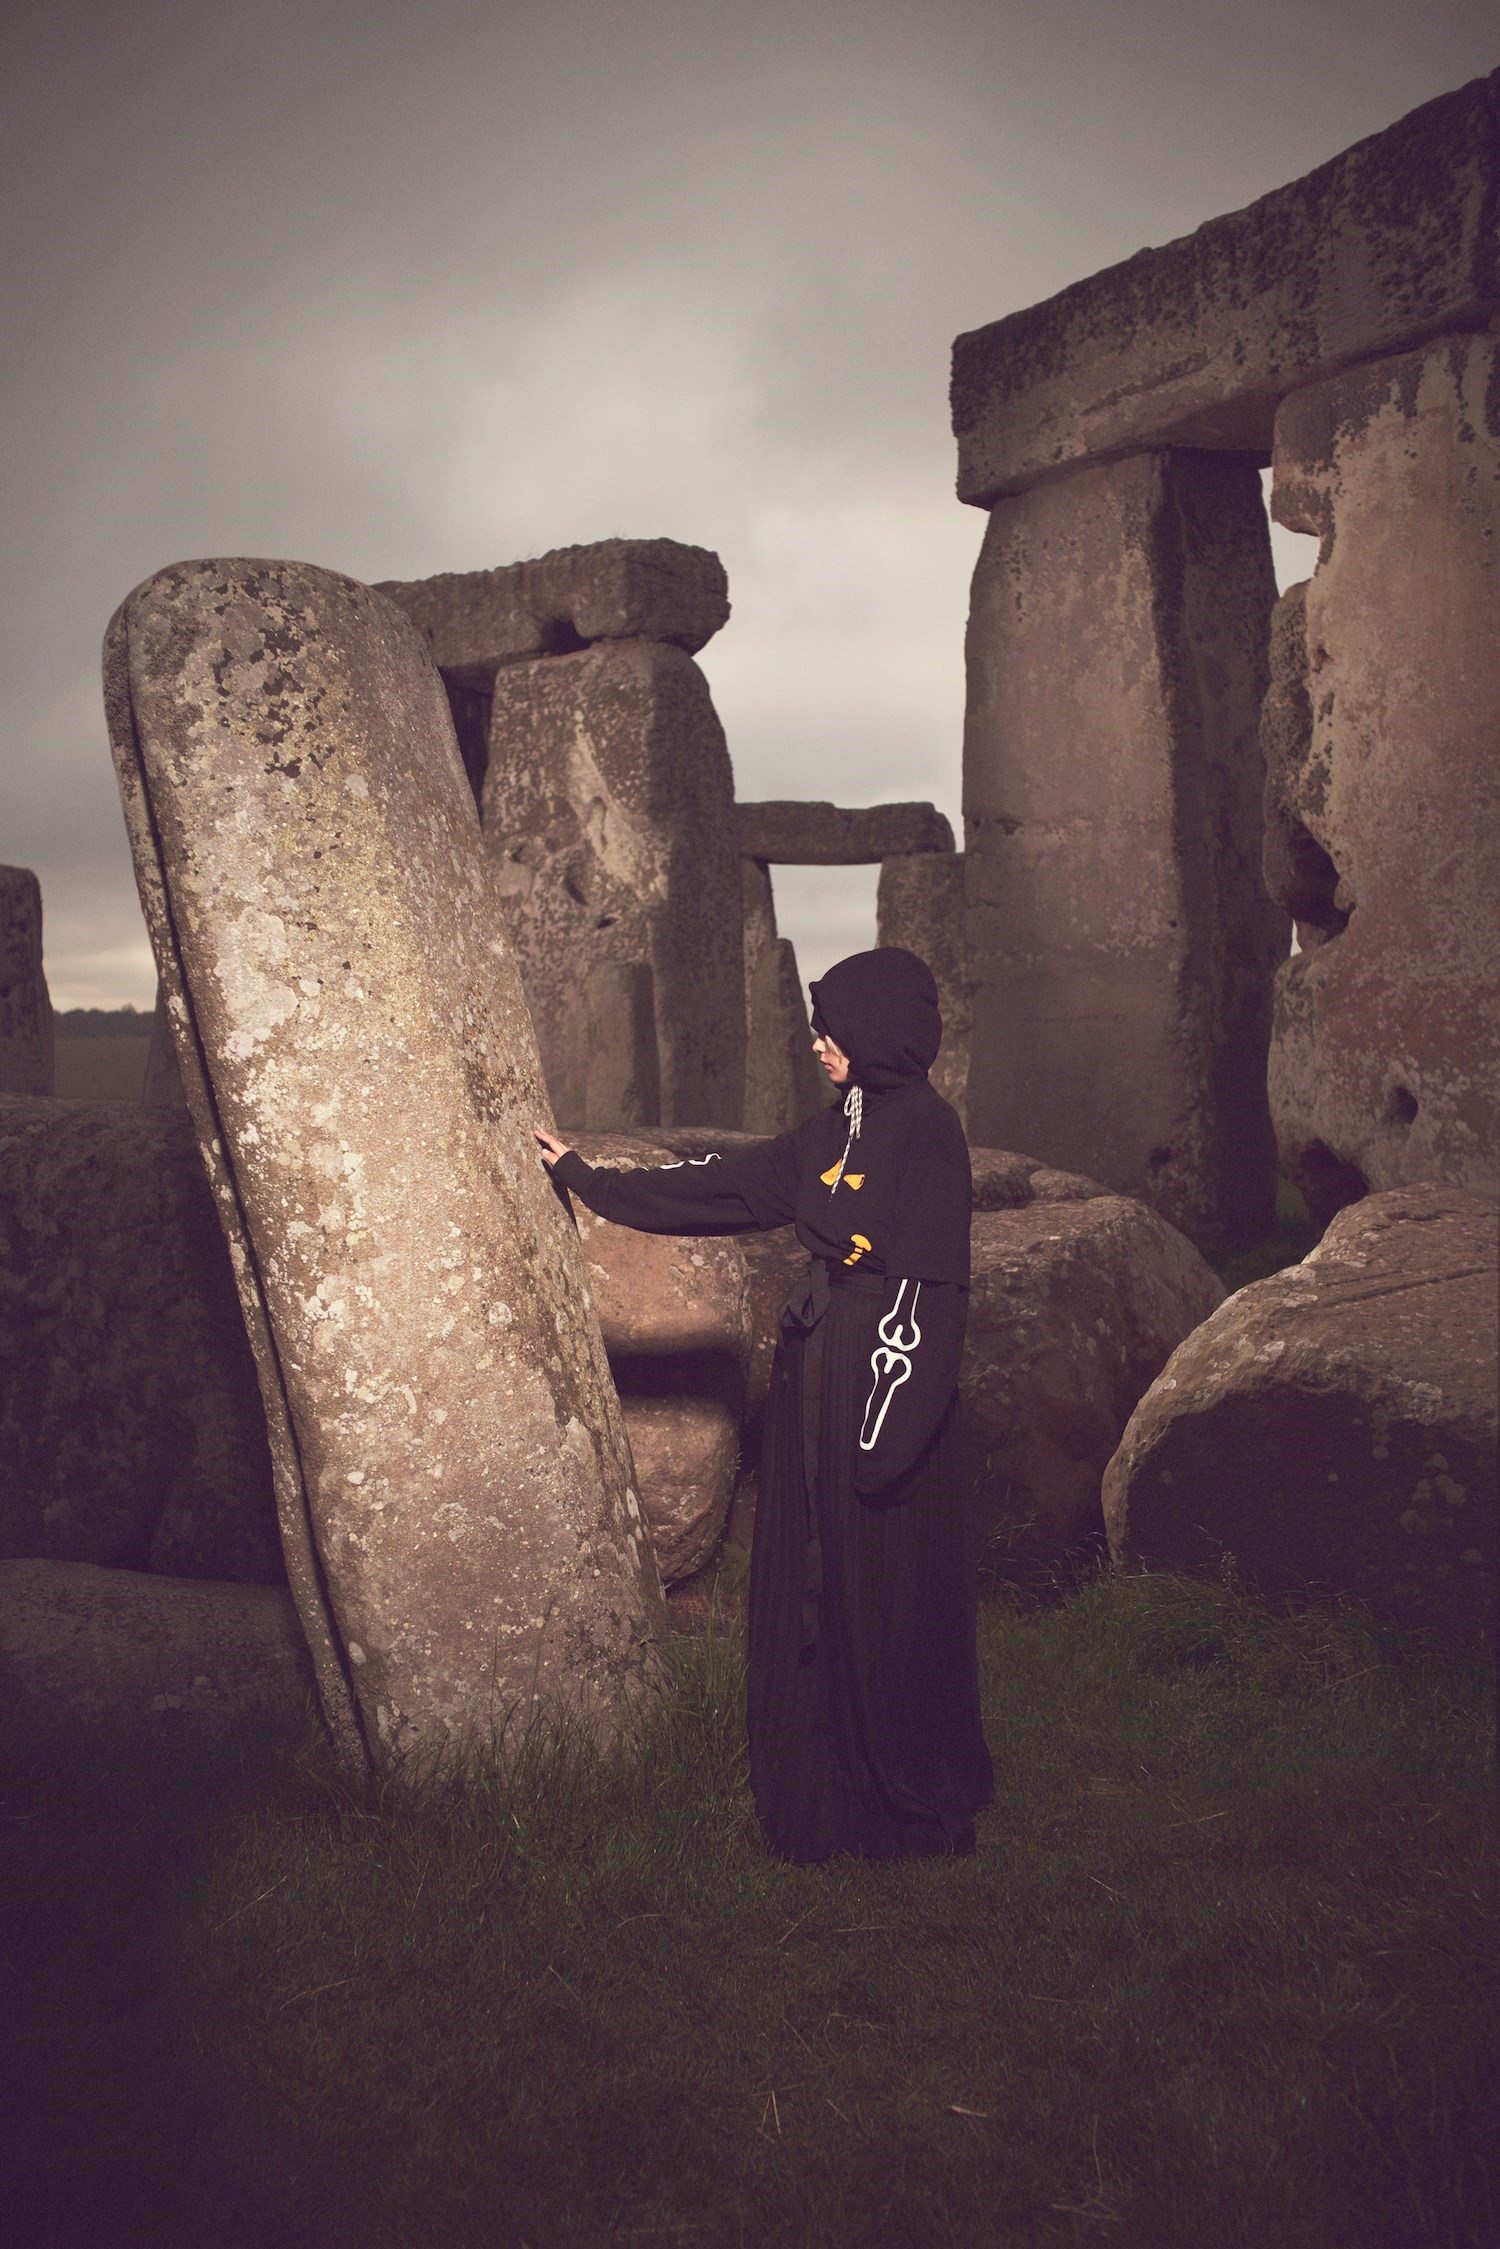 Aries x Jeremy Deller, la collab mystique qui réveille Stonehenge 